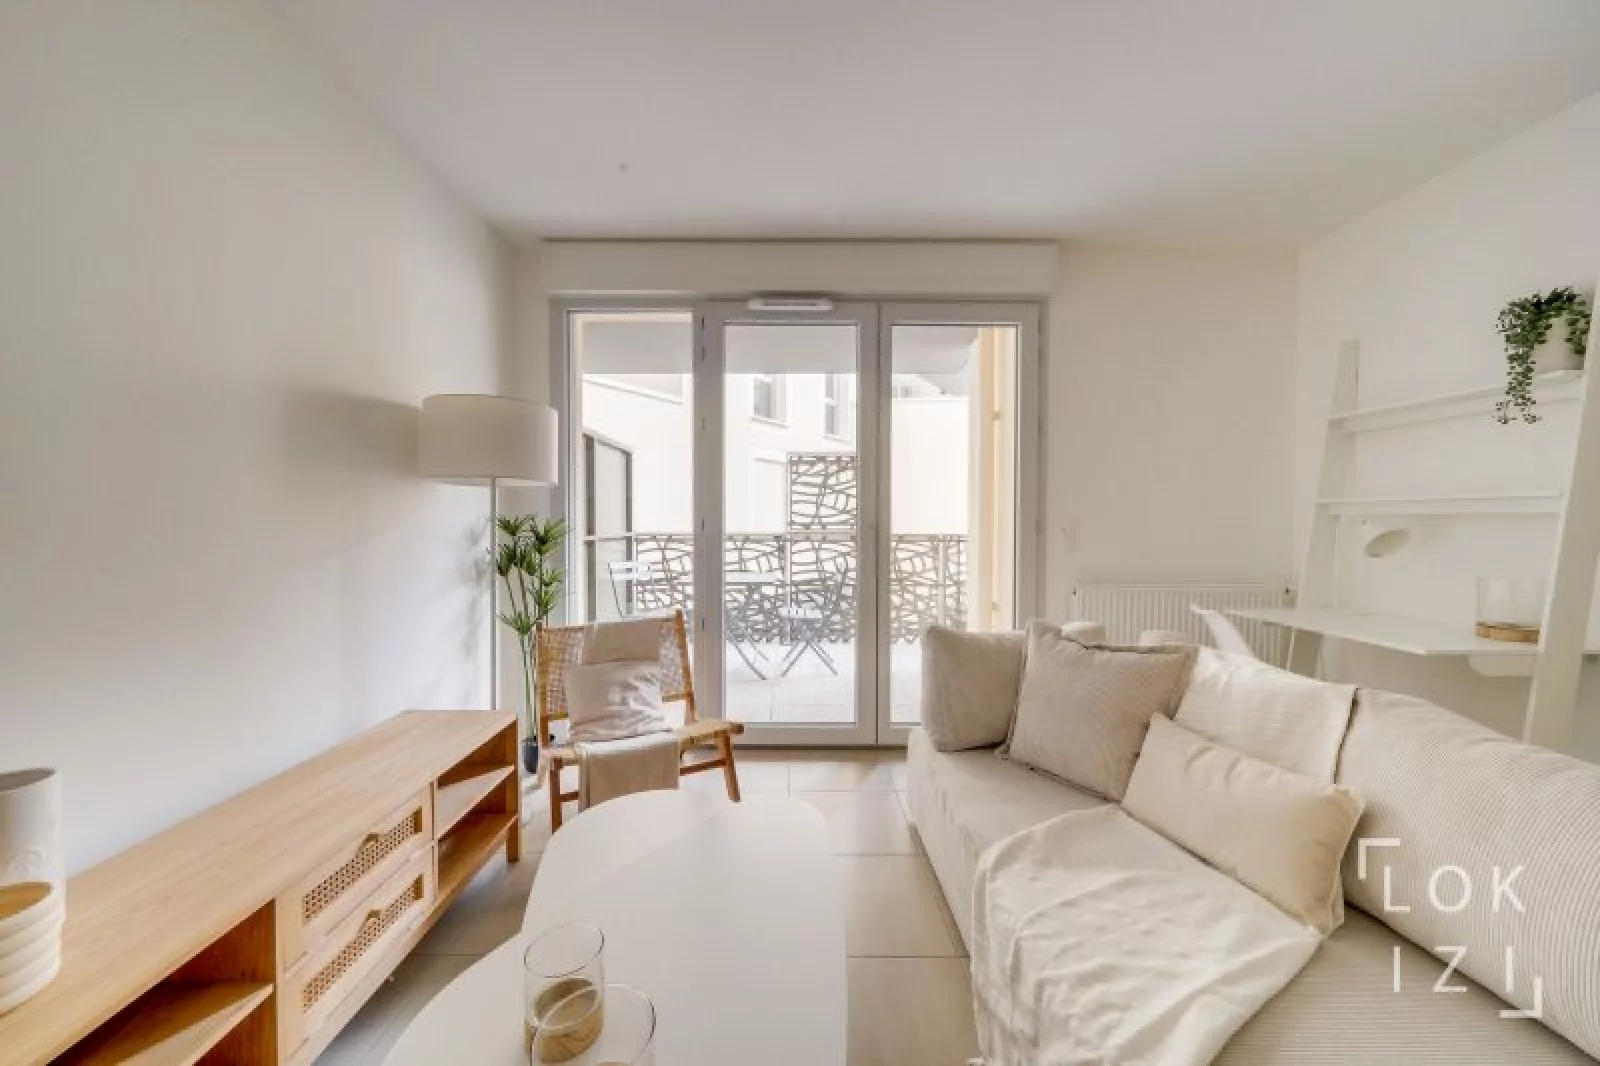 Location appartement meublé 2 pièces 40m² (Bordeaux - Cenon)